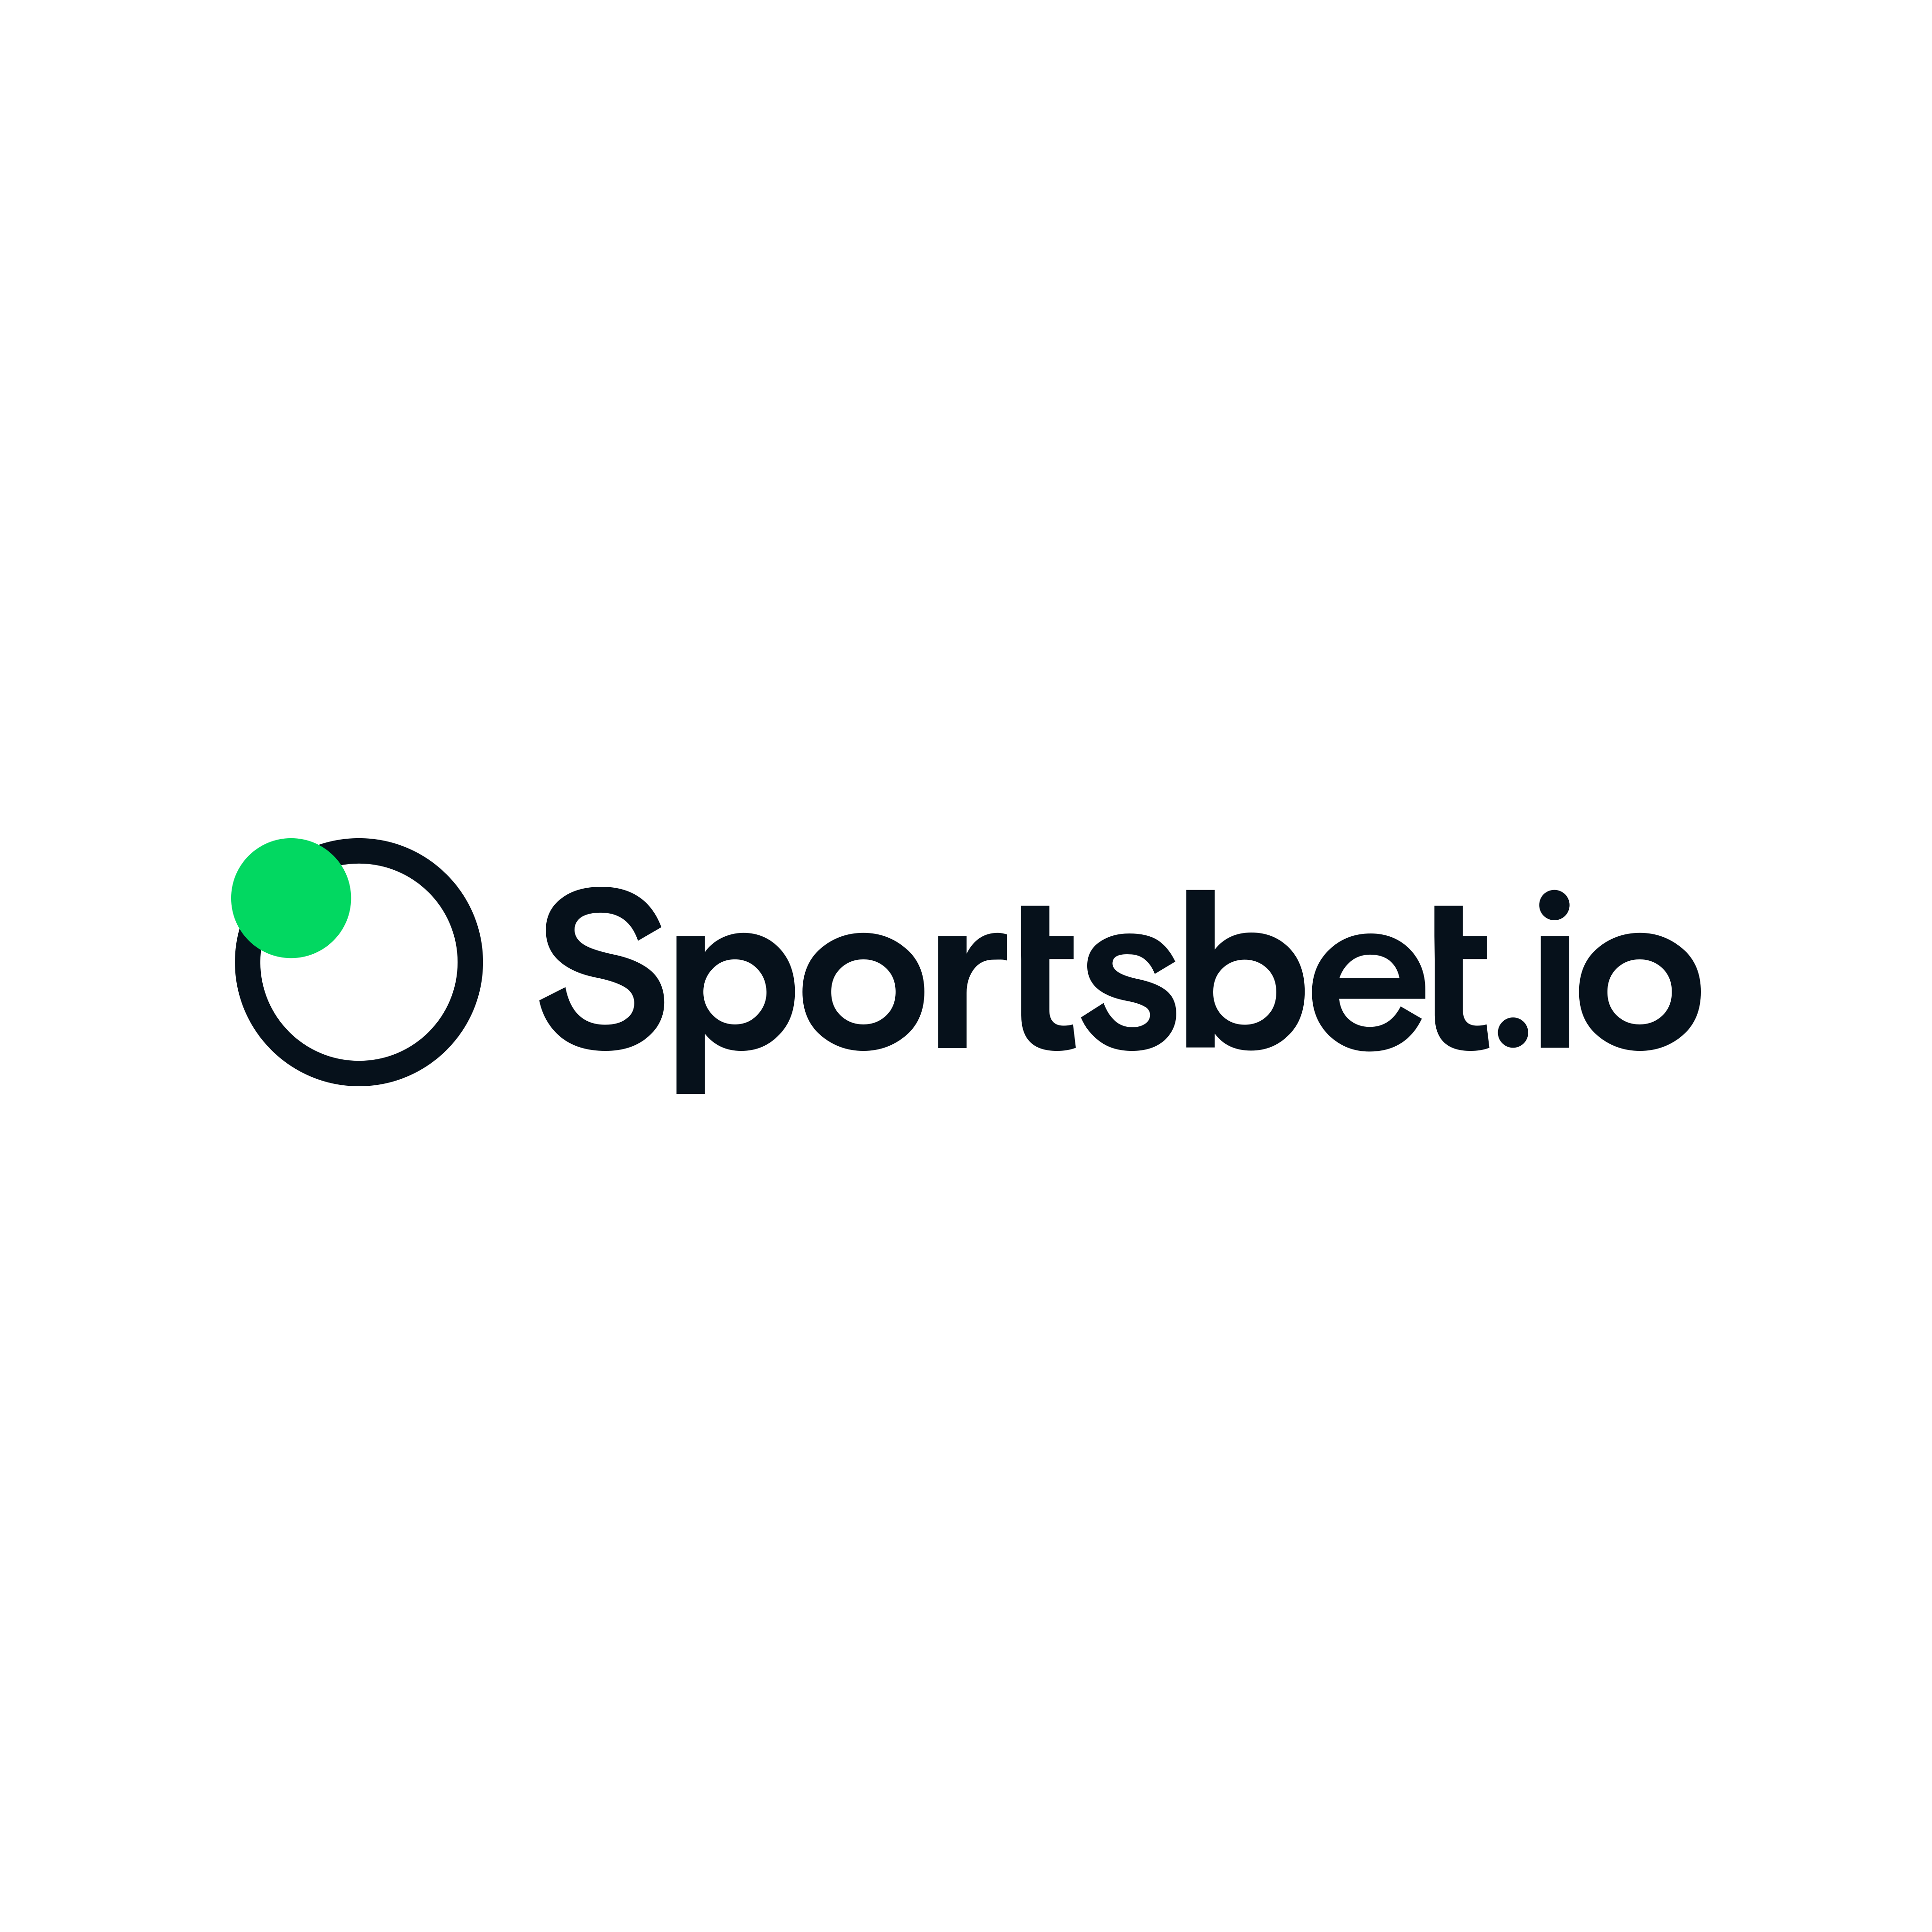 Sportsbet.io Logo PNG.